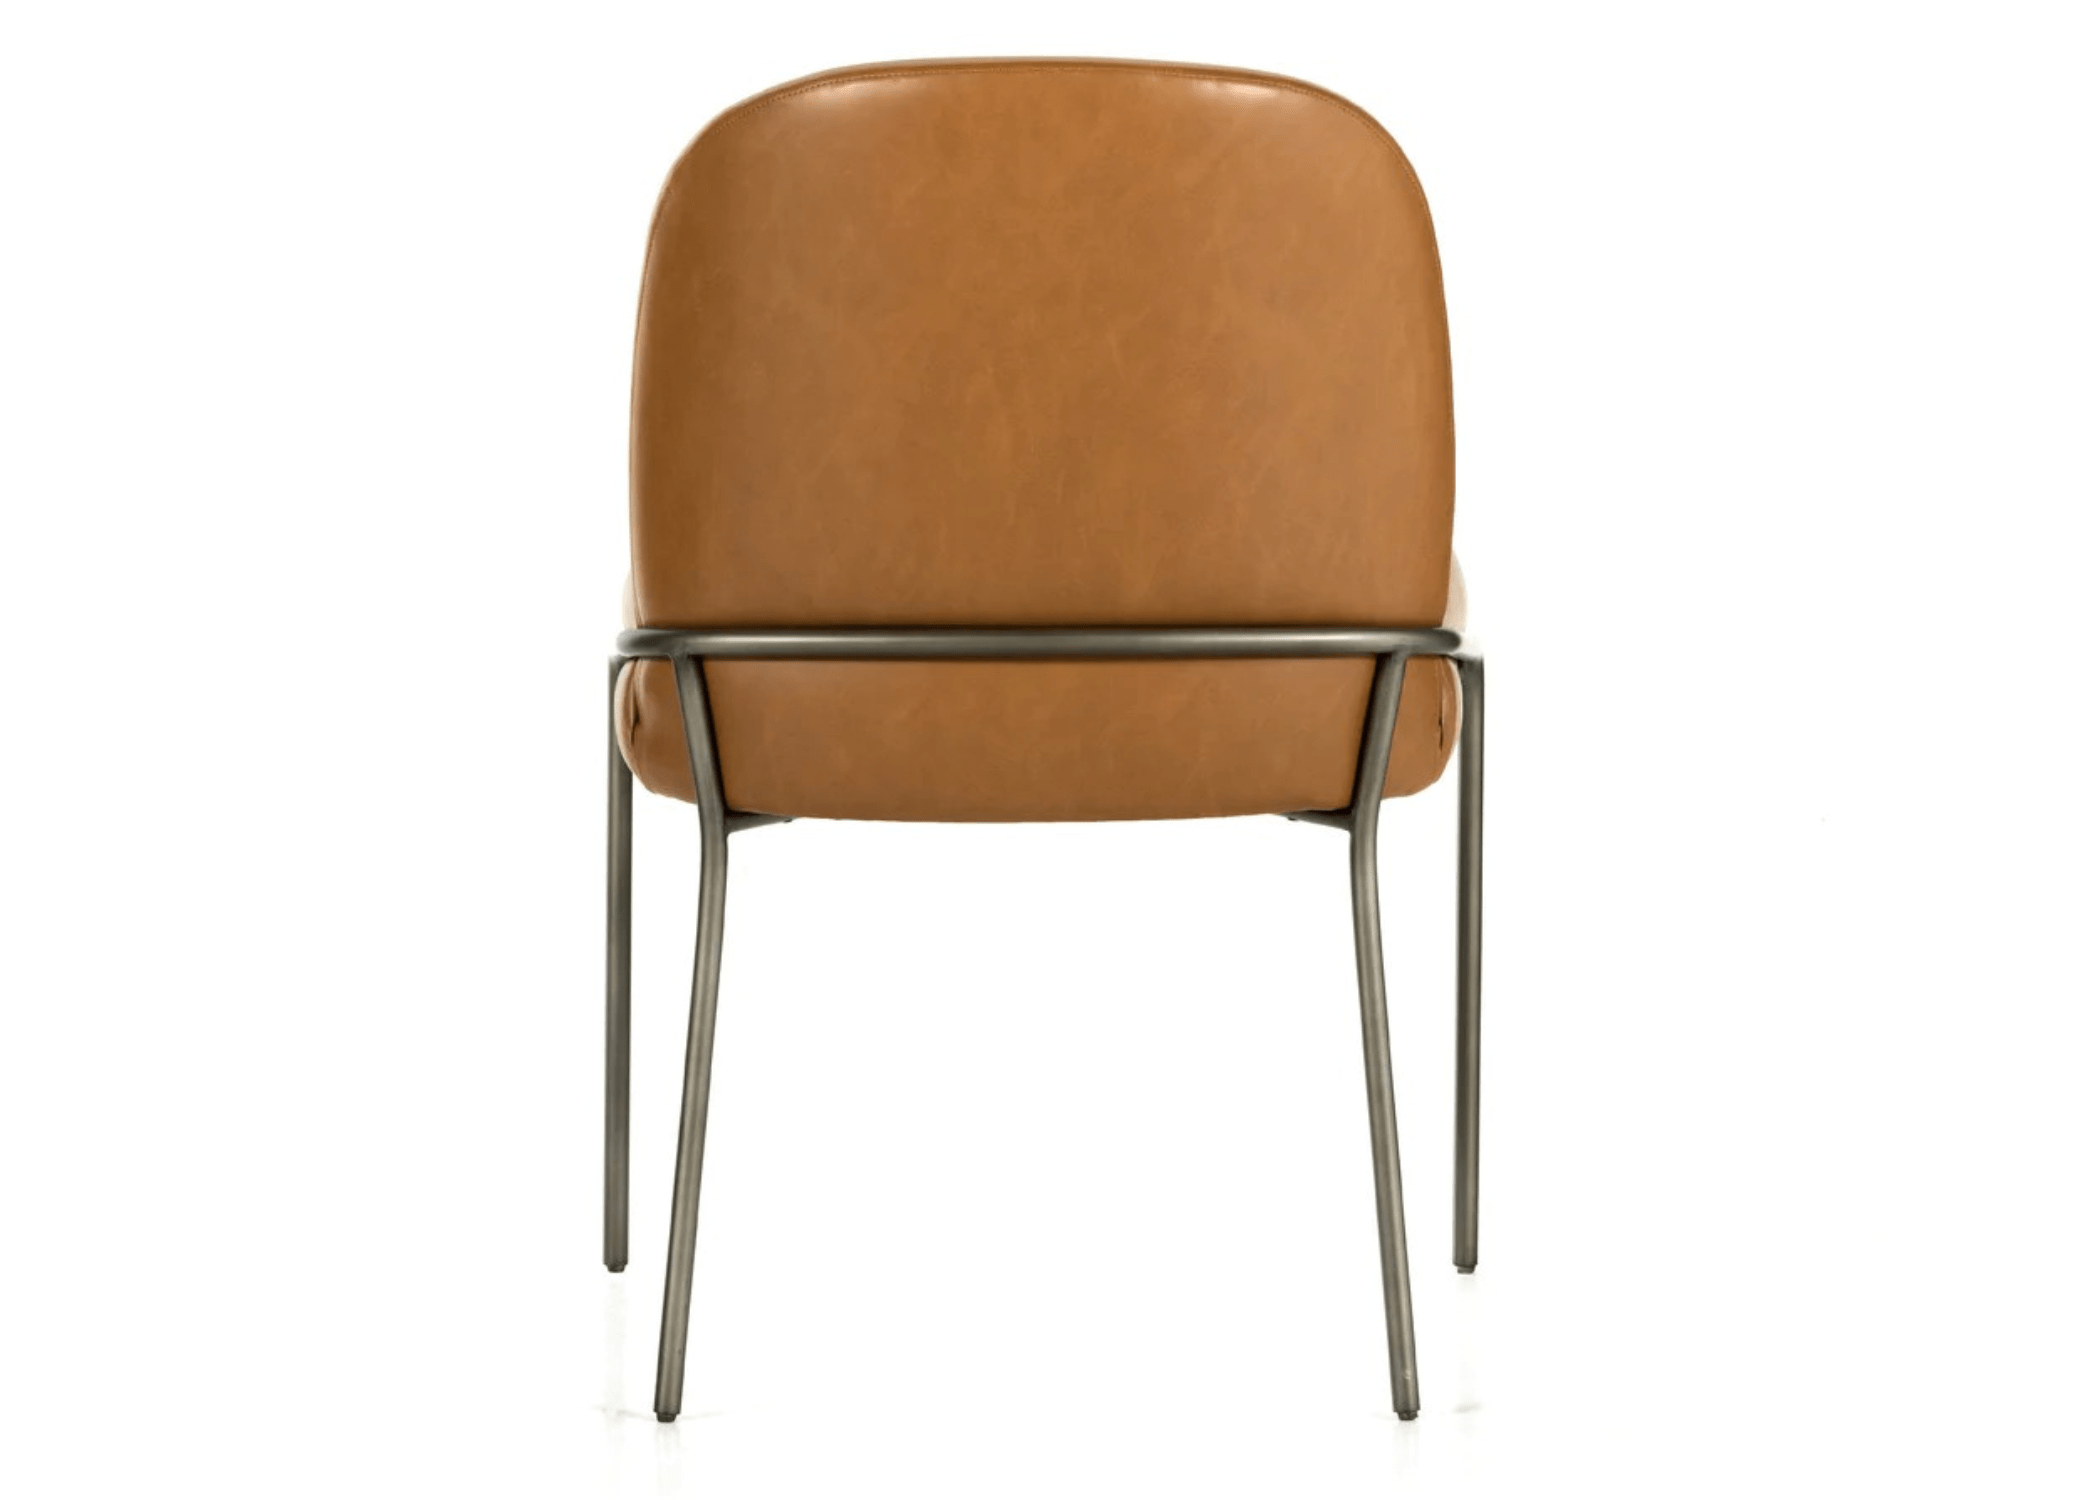 Design contemporâneo: Cadeira Thor combina funcionalidade e elegância.